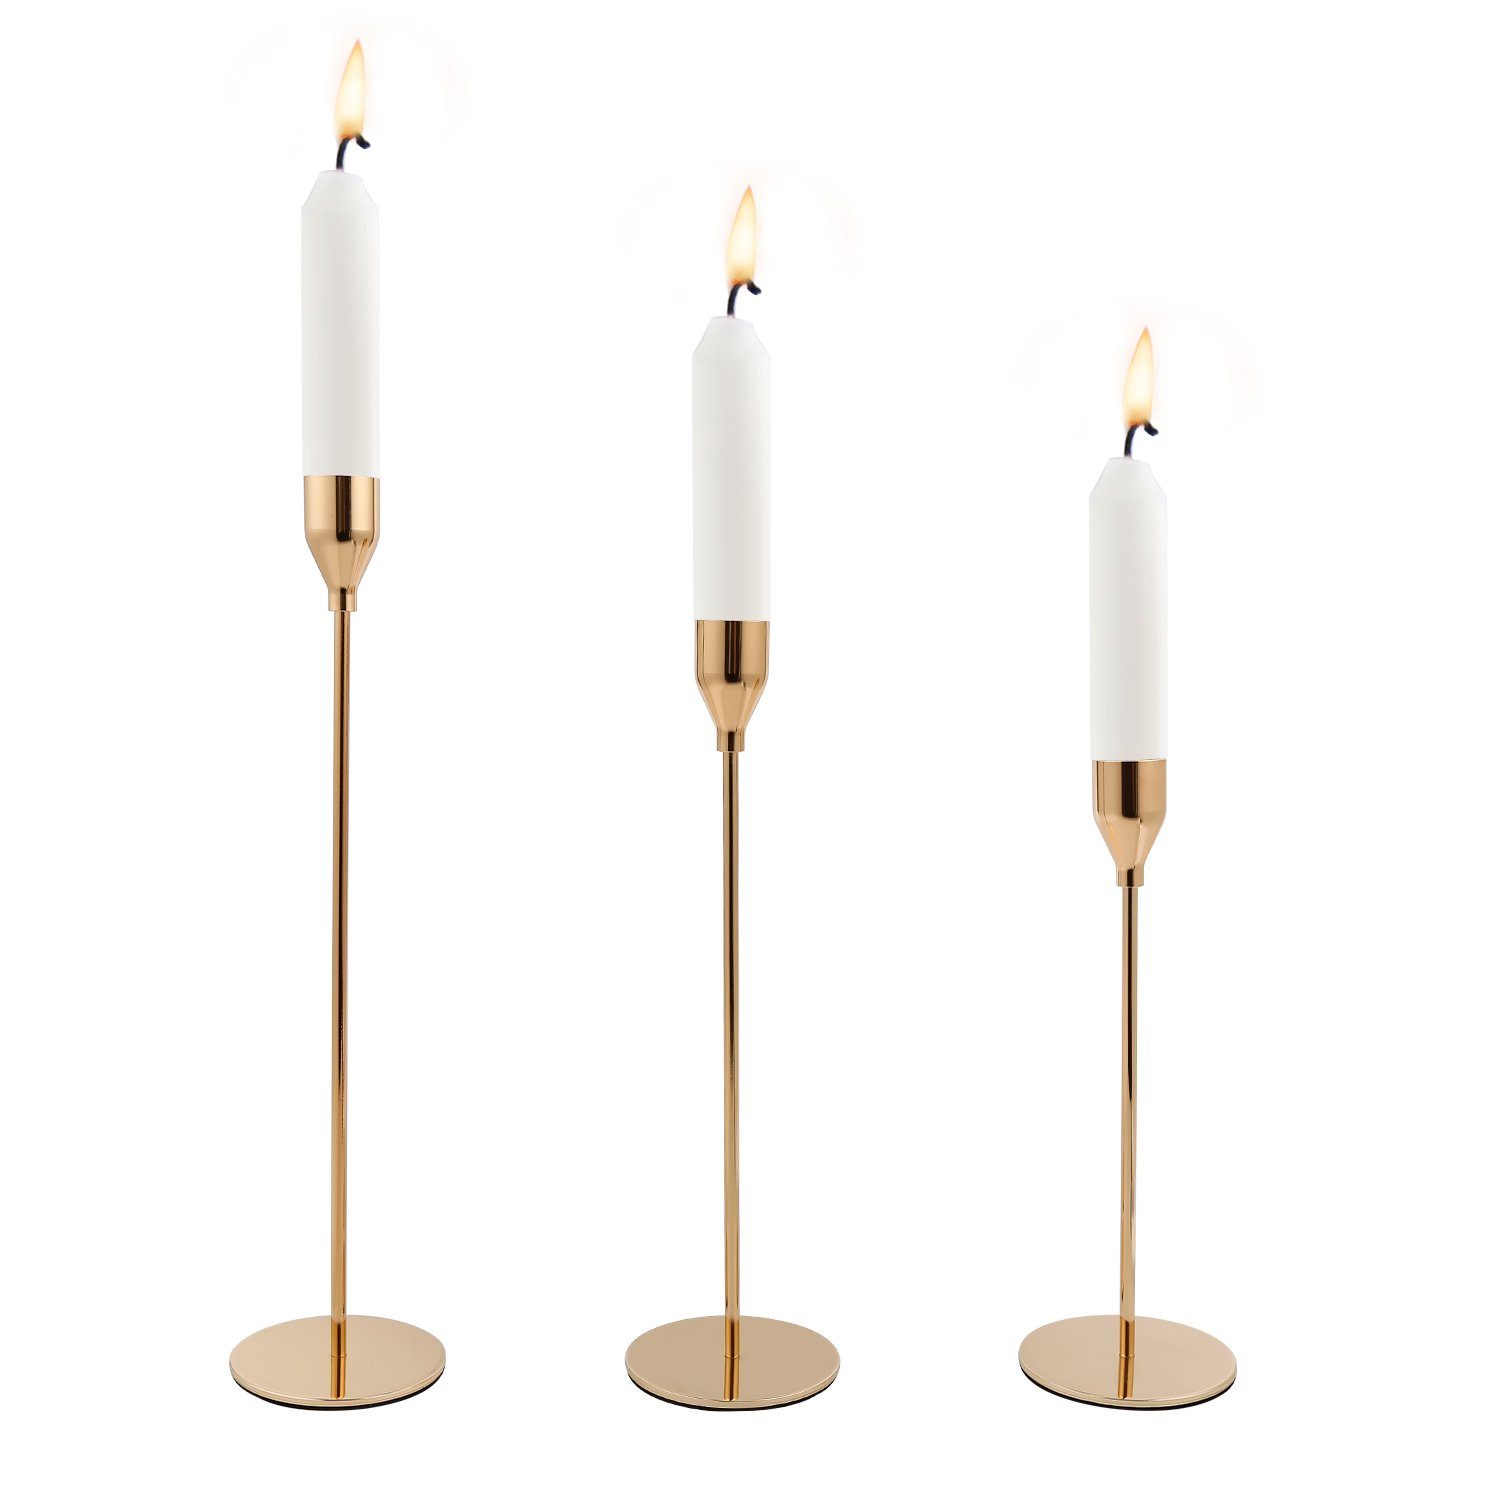 Gimisgu Kerzenständer Kerzenständer Kerzenständer für Stabkerzen aus Eisen Gold/silber